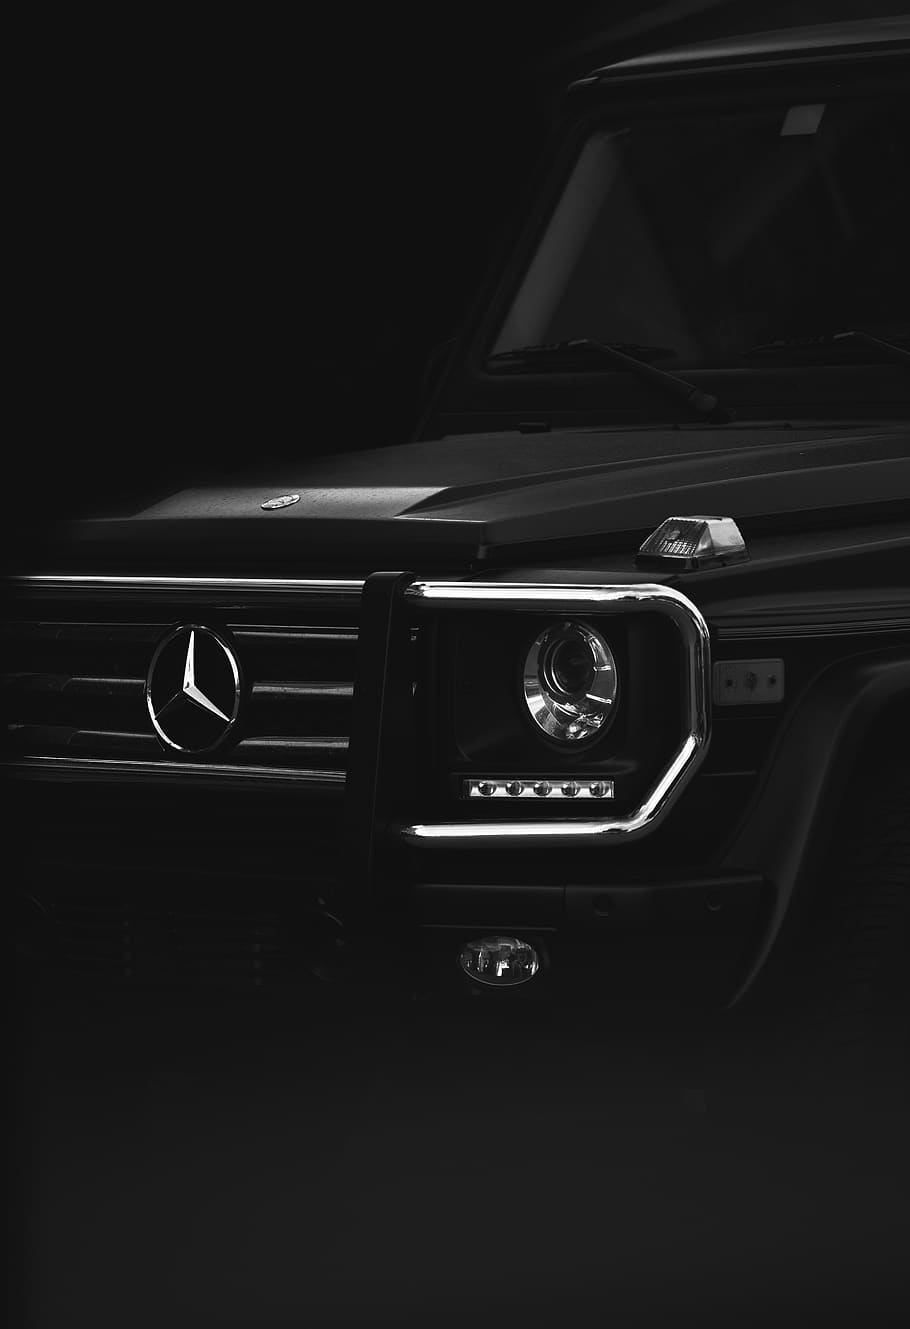 black Mercedes-Benz car, motor vehicle, mode of transportation